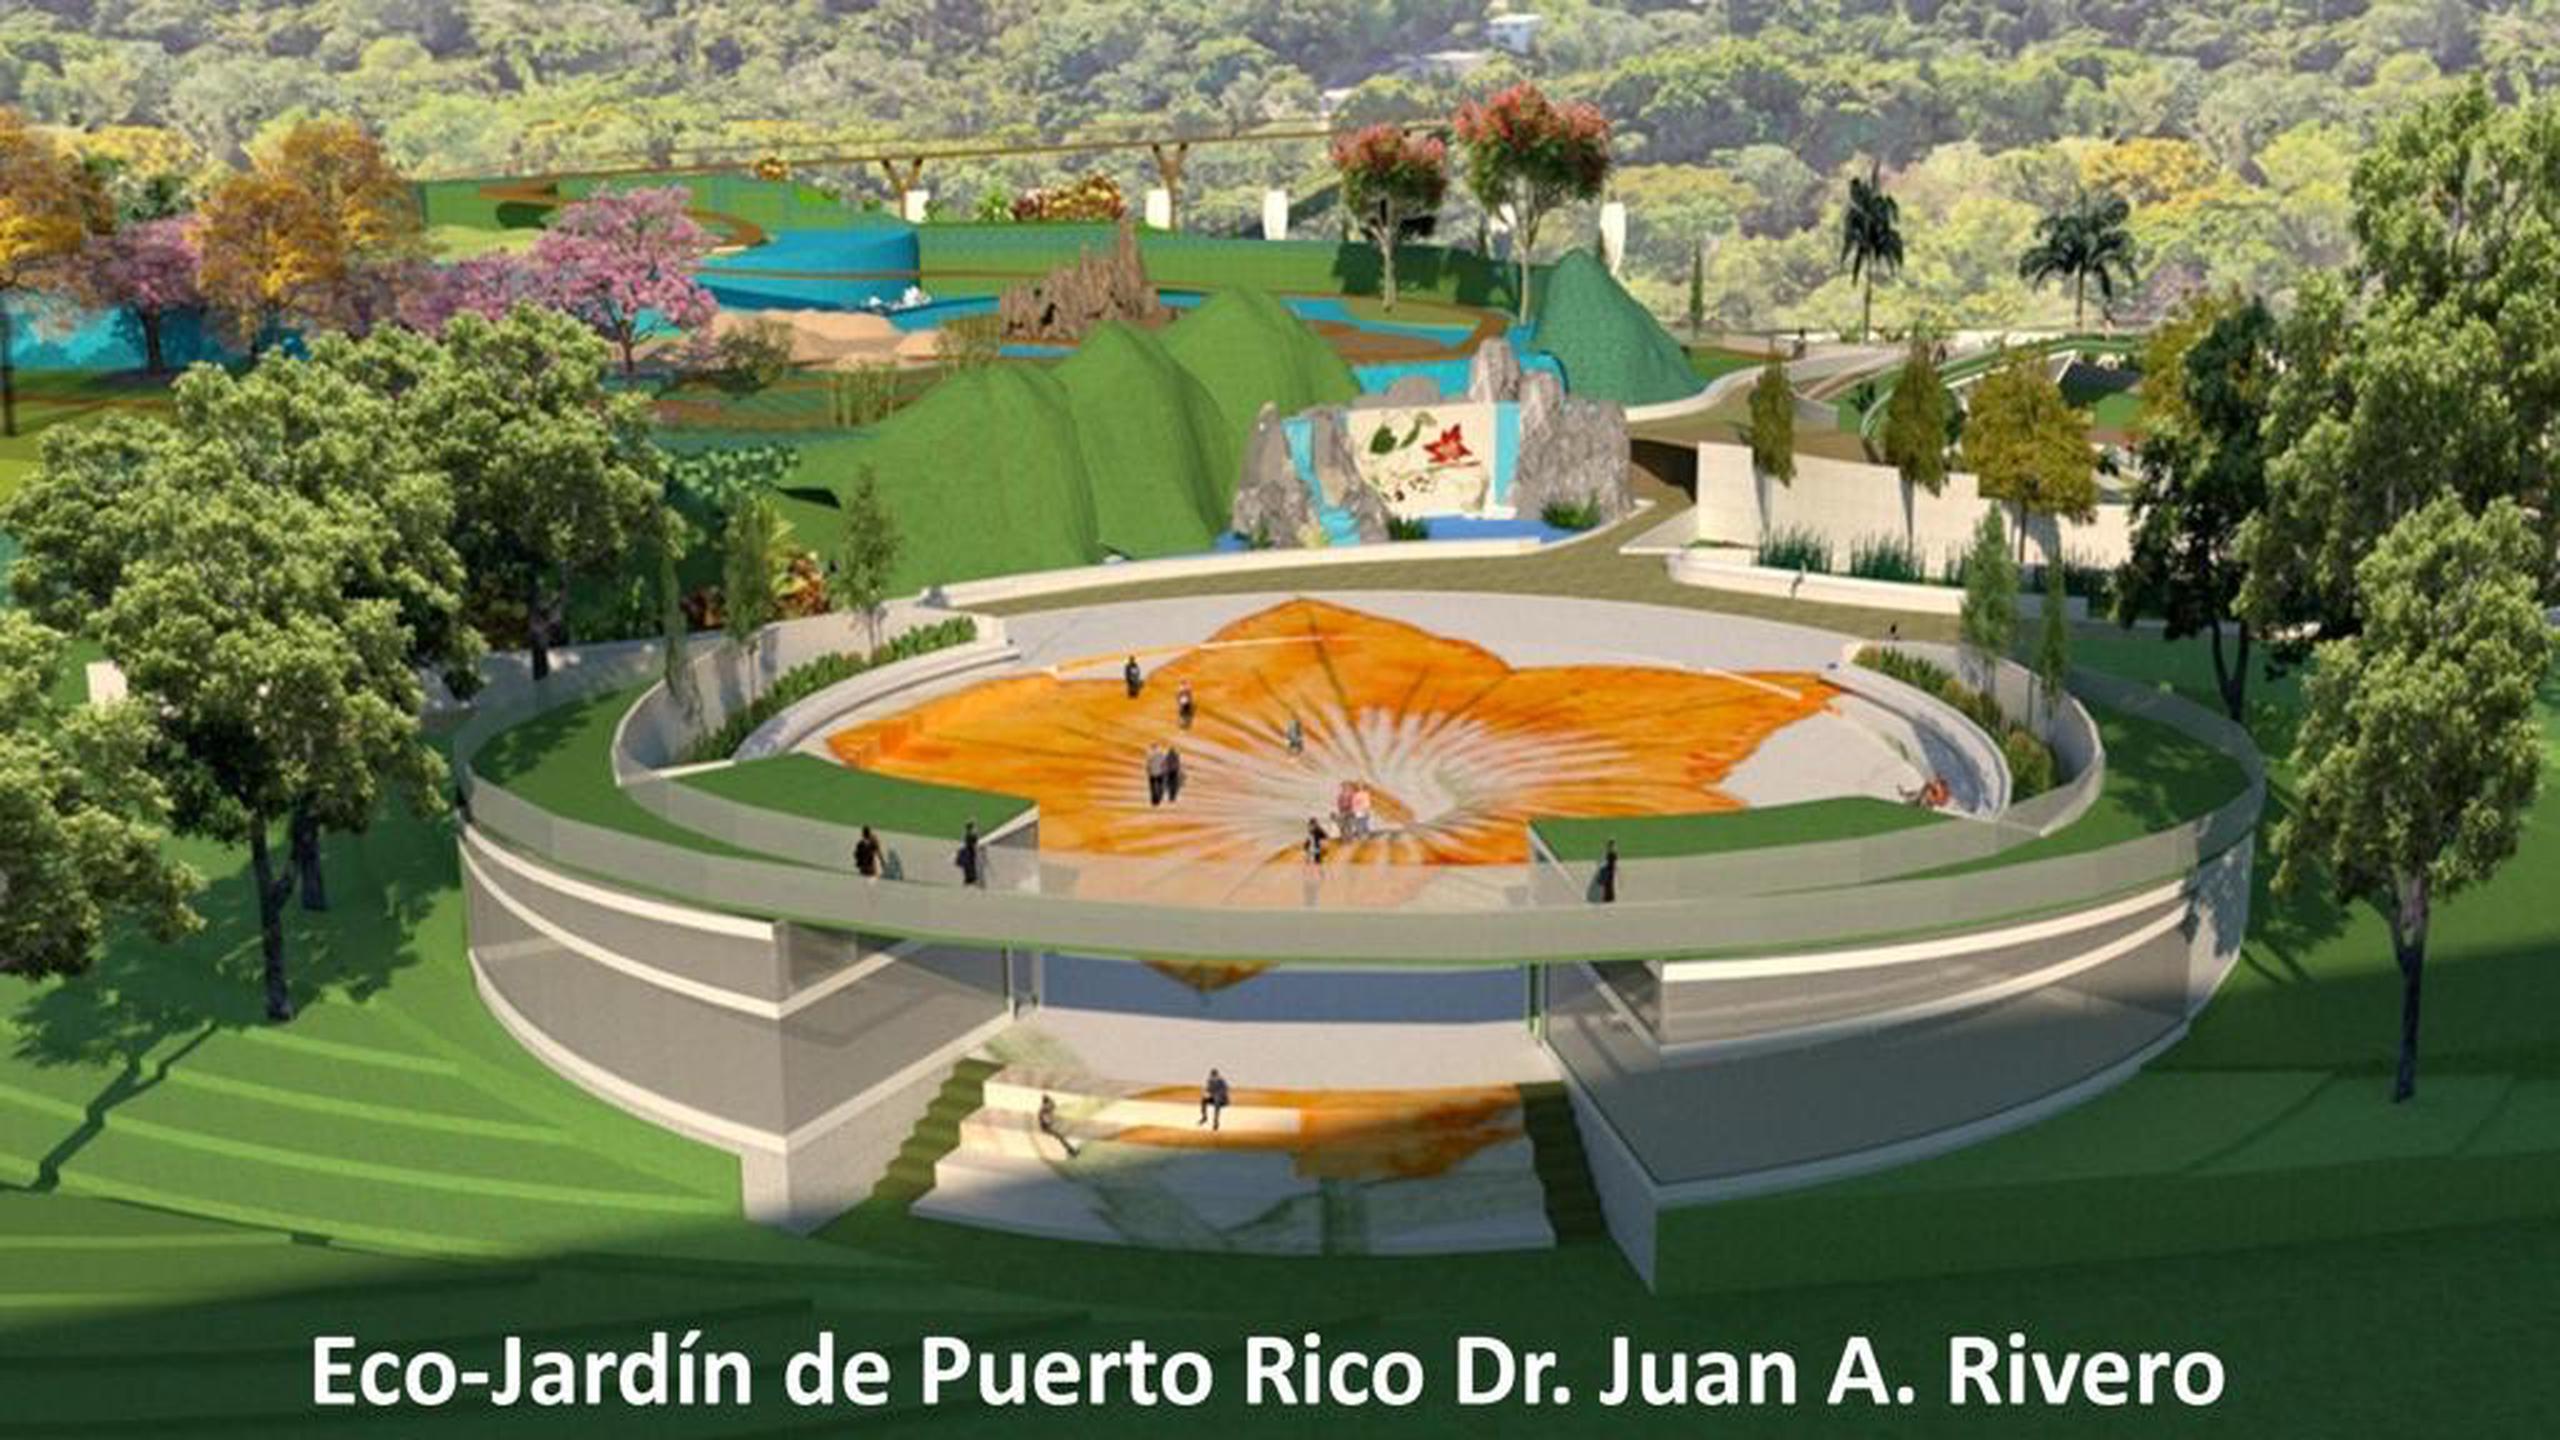 Los planes del DRNA son utilizar $3.1 millones asignados en fondos del Plan de Rescate Americano (ARPA, en inglés) para comenzar a construir, al menos, la primera fase del parque.